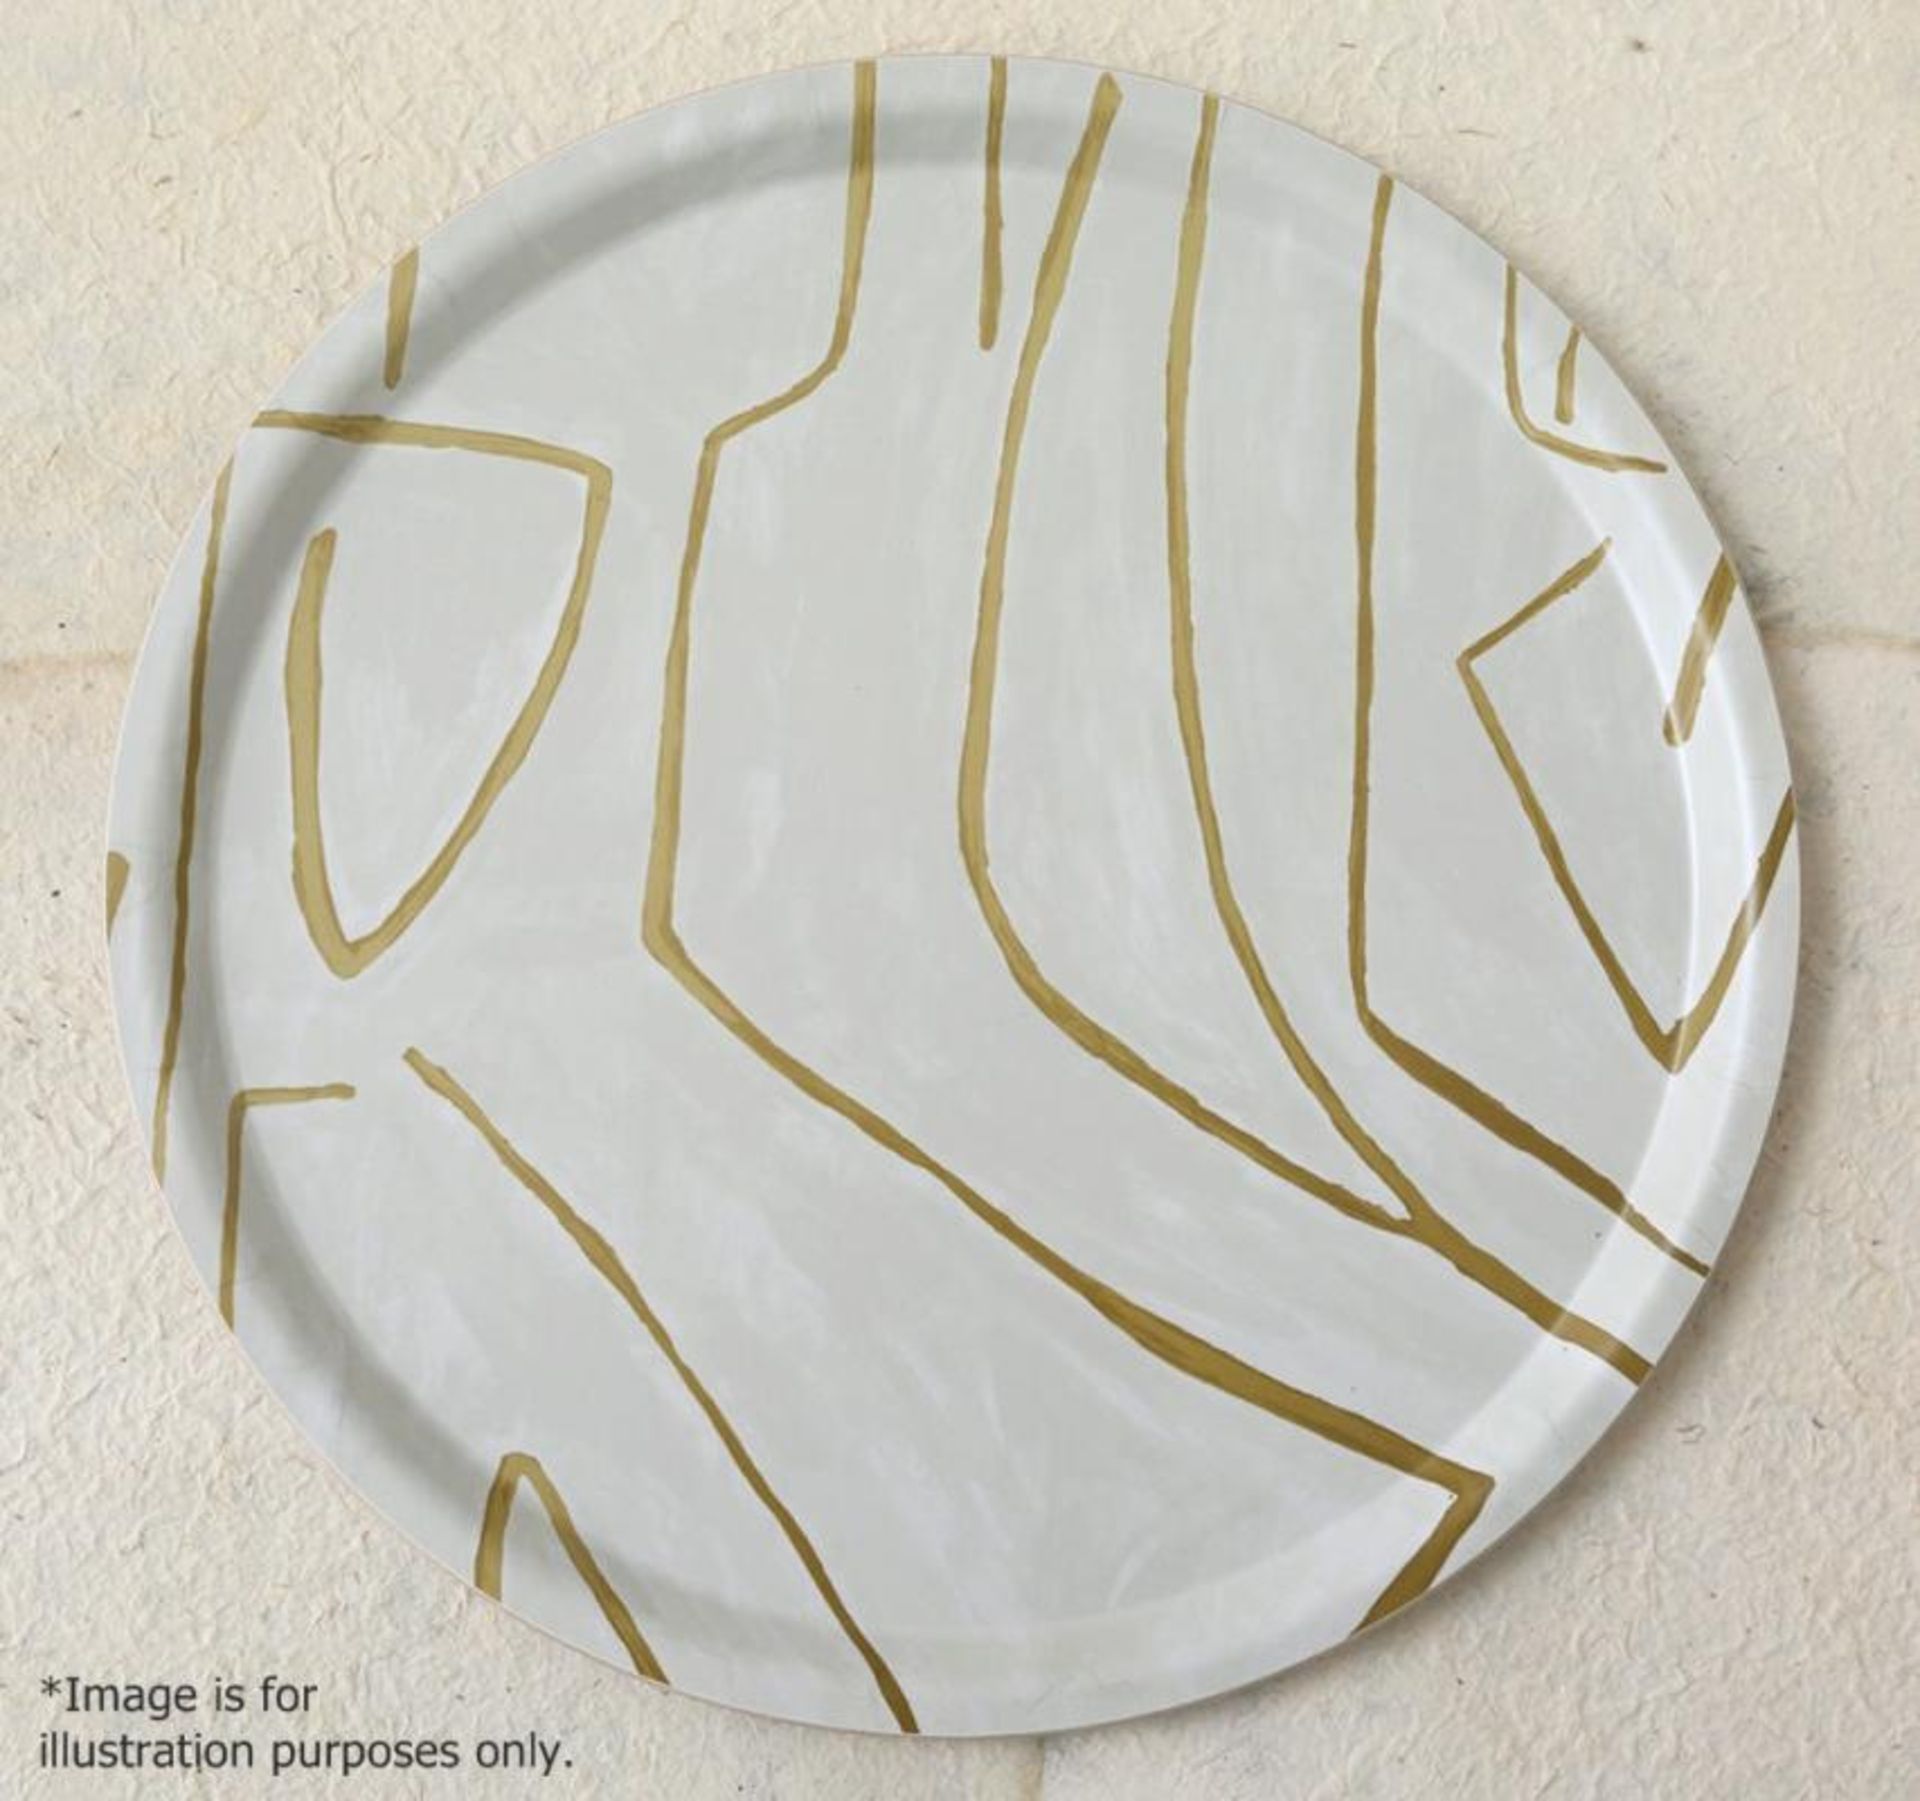 1 x KELLY WEARSTLER Grafitto Platter - Unique Handcrafted Piece - 34cm In Diameter - Ref: 5601556-B